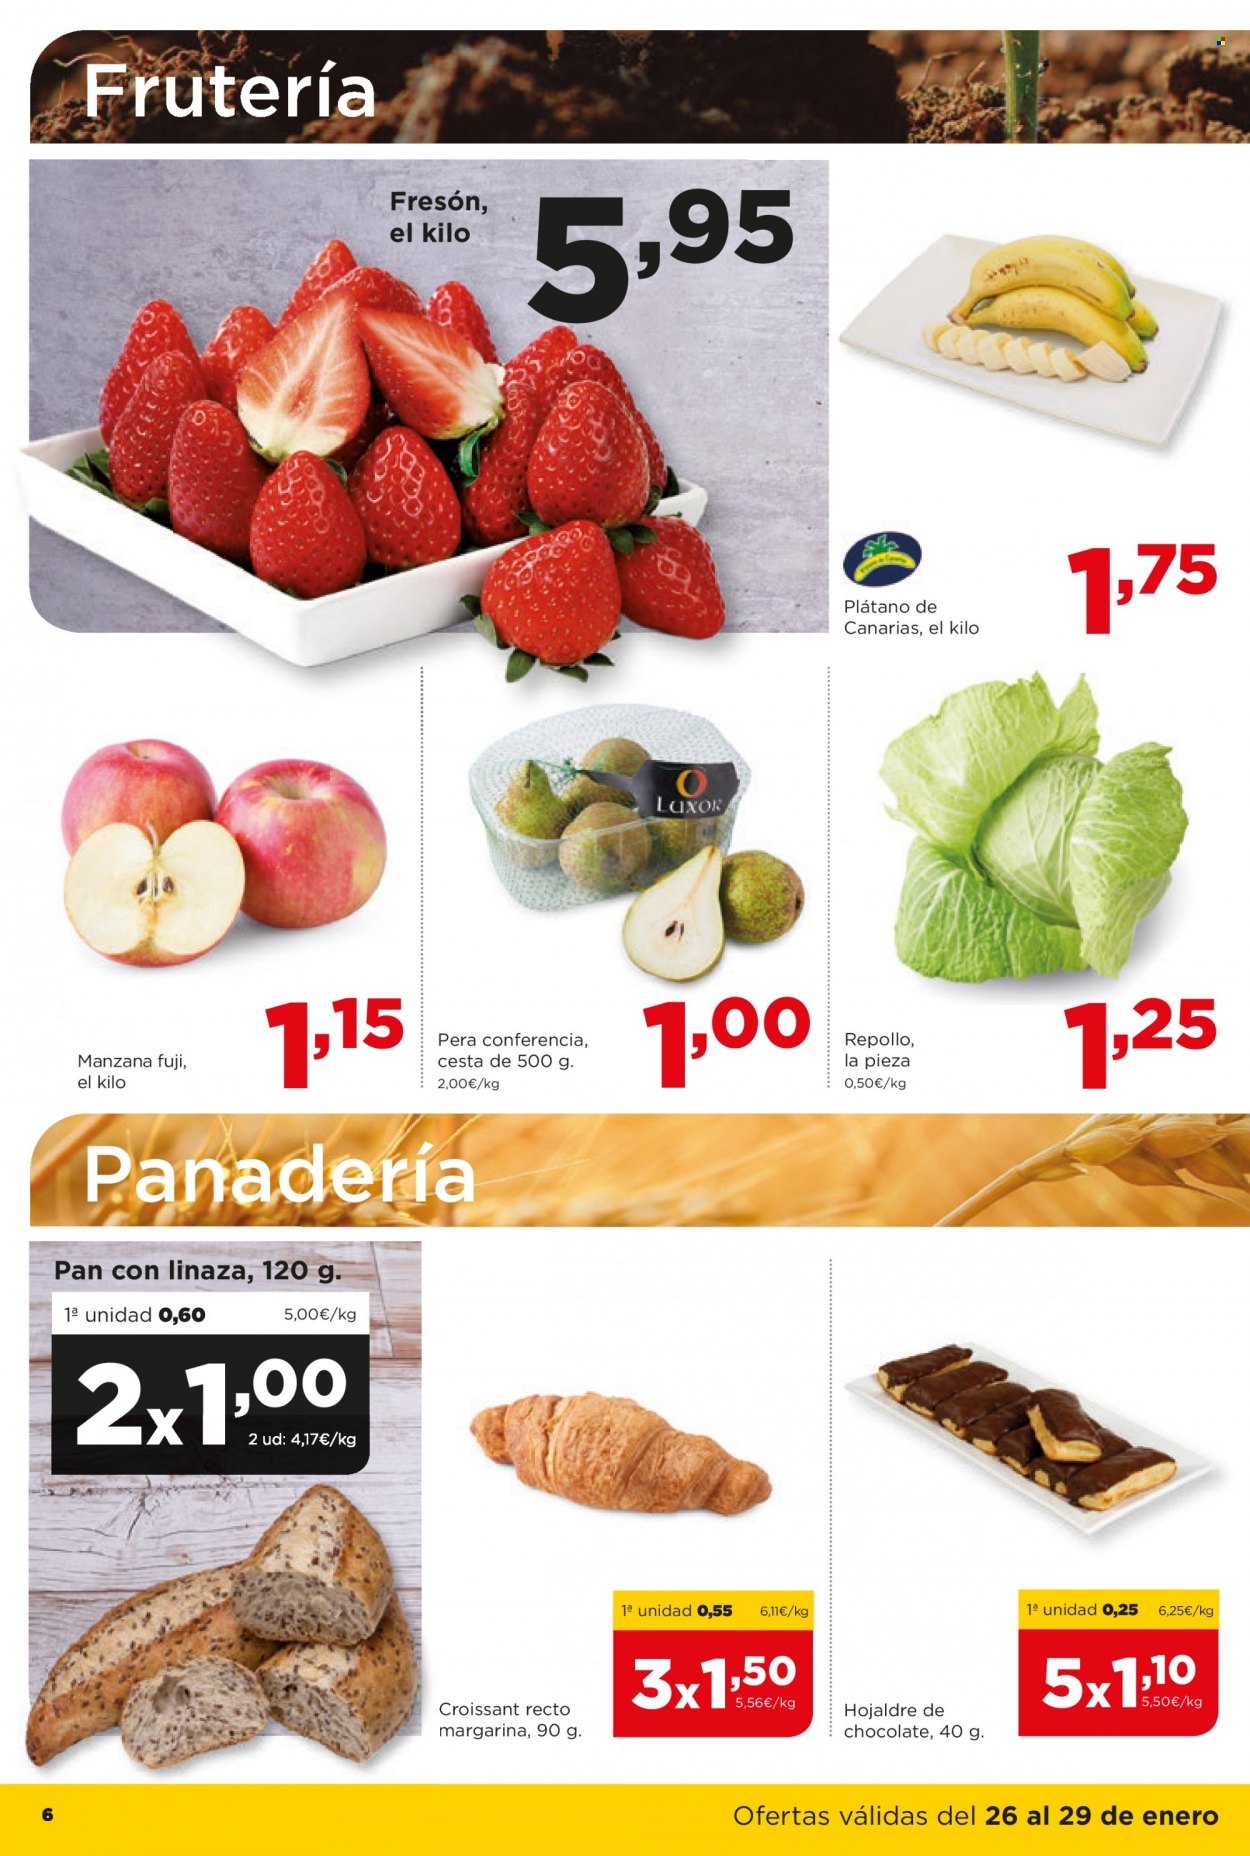 thumbnail - Folleto actual Alimerka - 26/01/23 - 08/02/23 - Ventas - fresa, plátano, manzanas, pera, repollo blanco, pan, croissant, pastelería, hojaldre. Página 6.